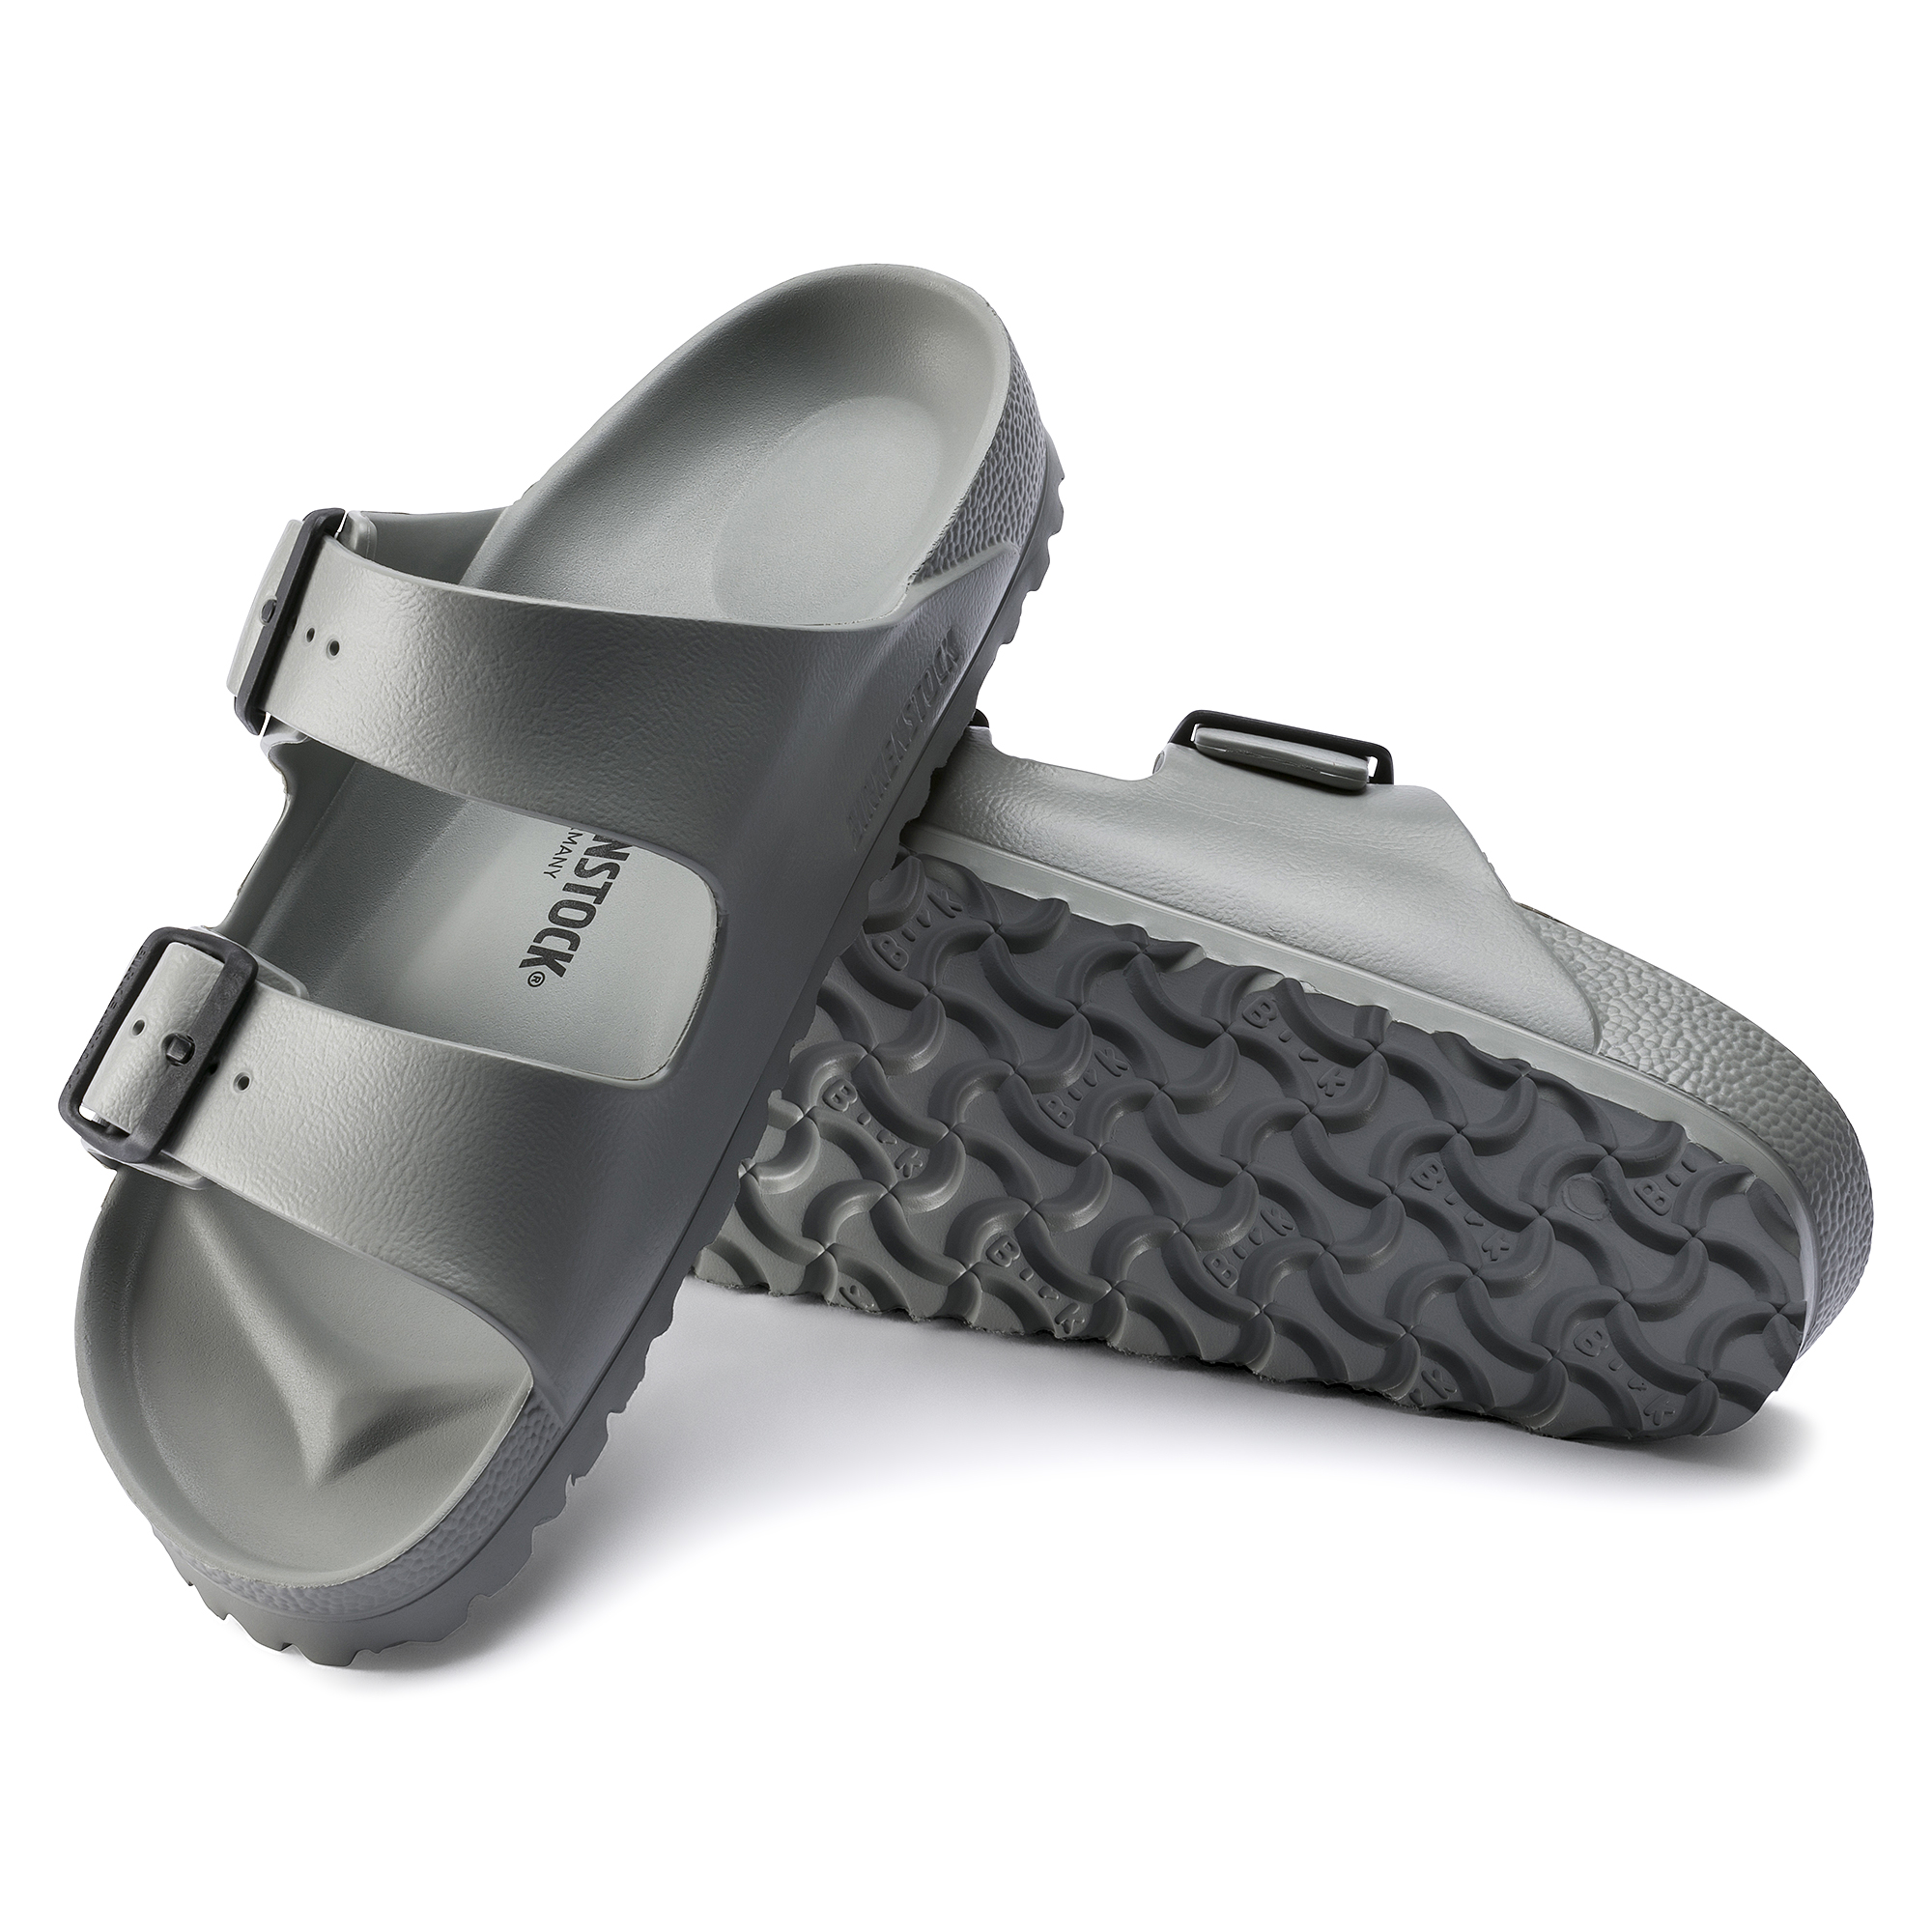 birkenstock sandals rubber